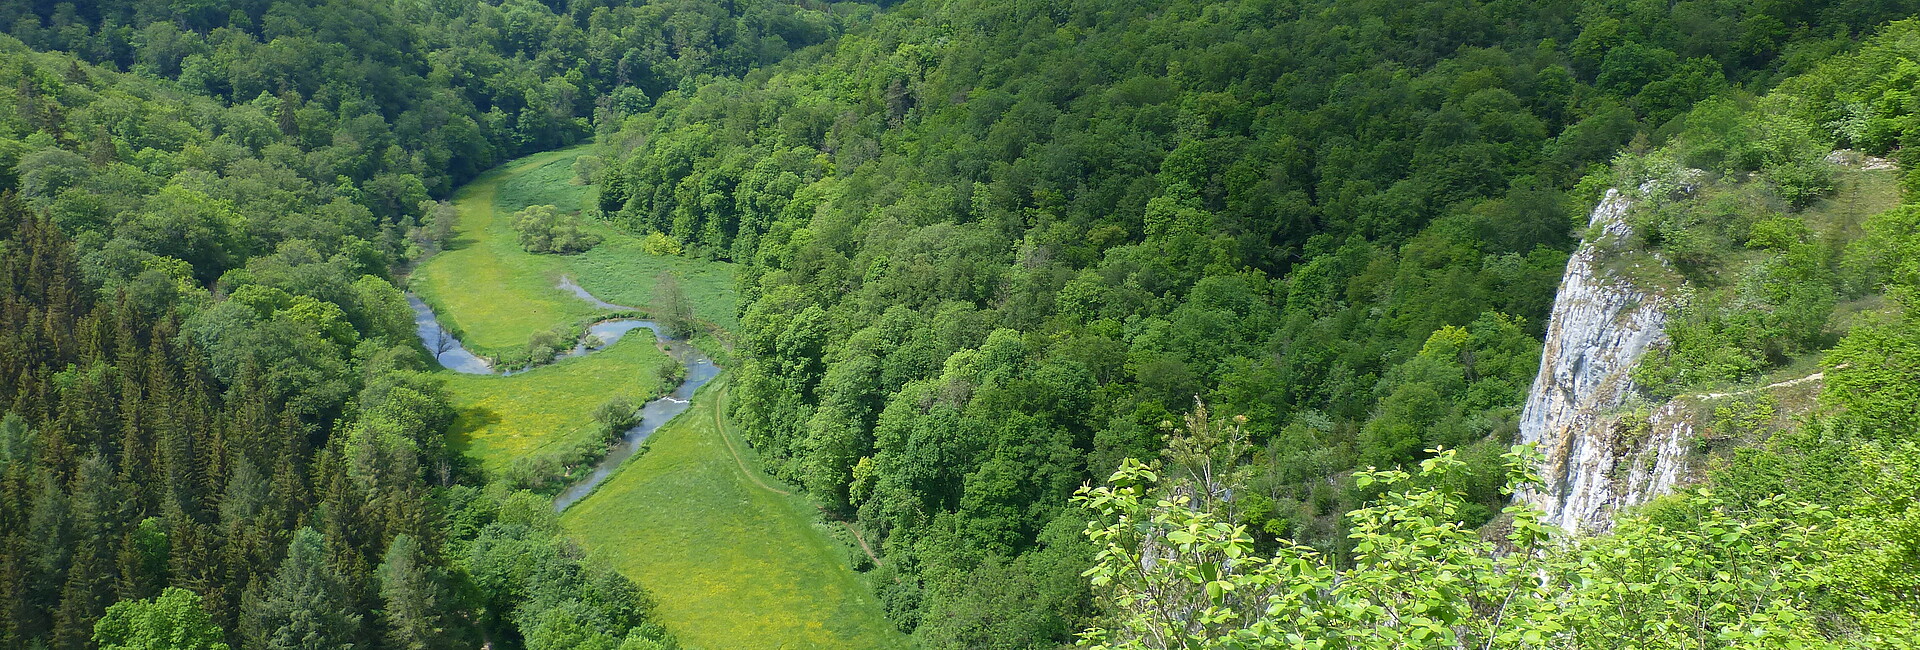 Ausblick auf Wälder, Wiesen, Fluss und Felsen im Großen Lautertal